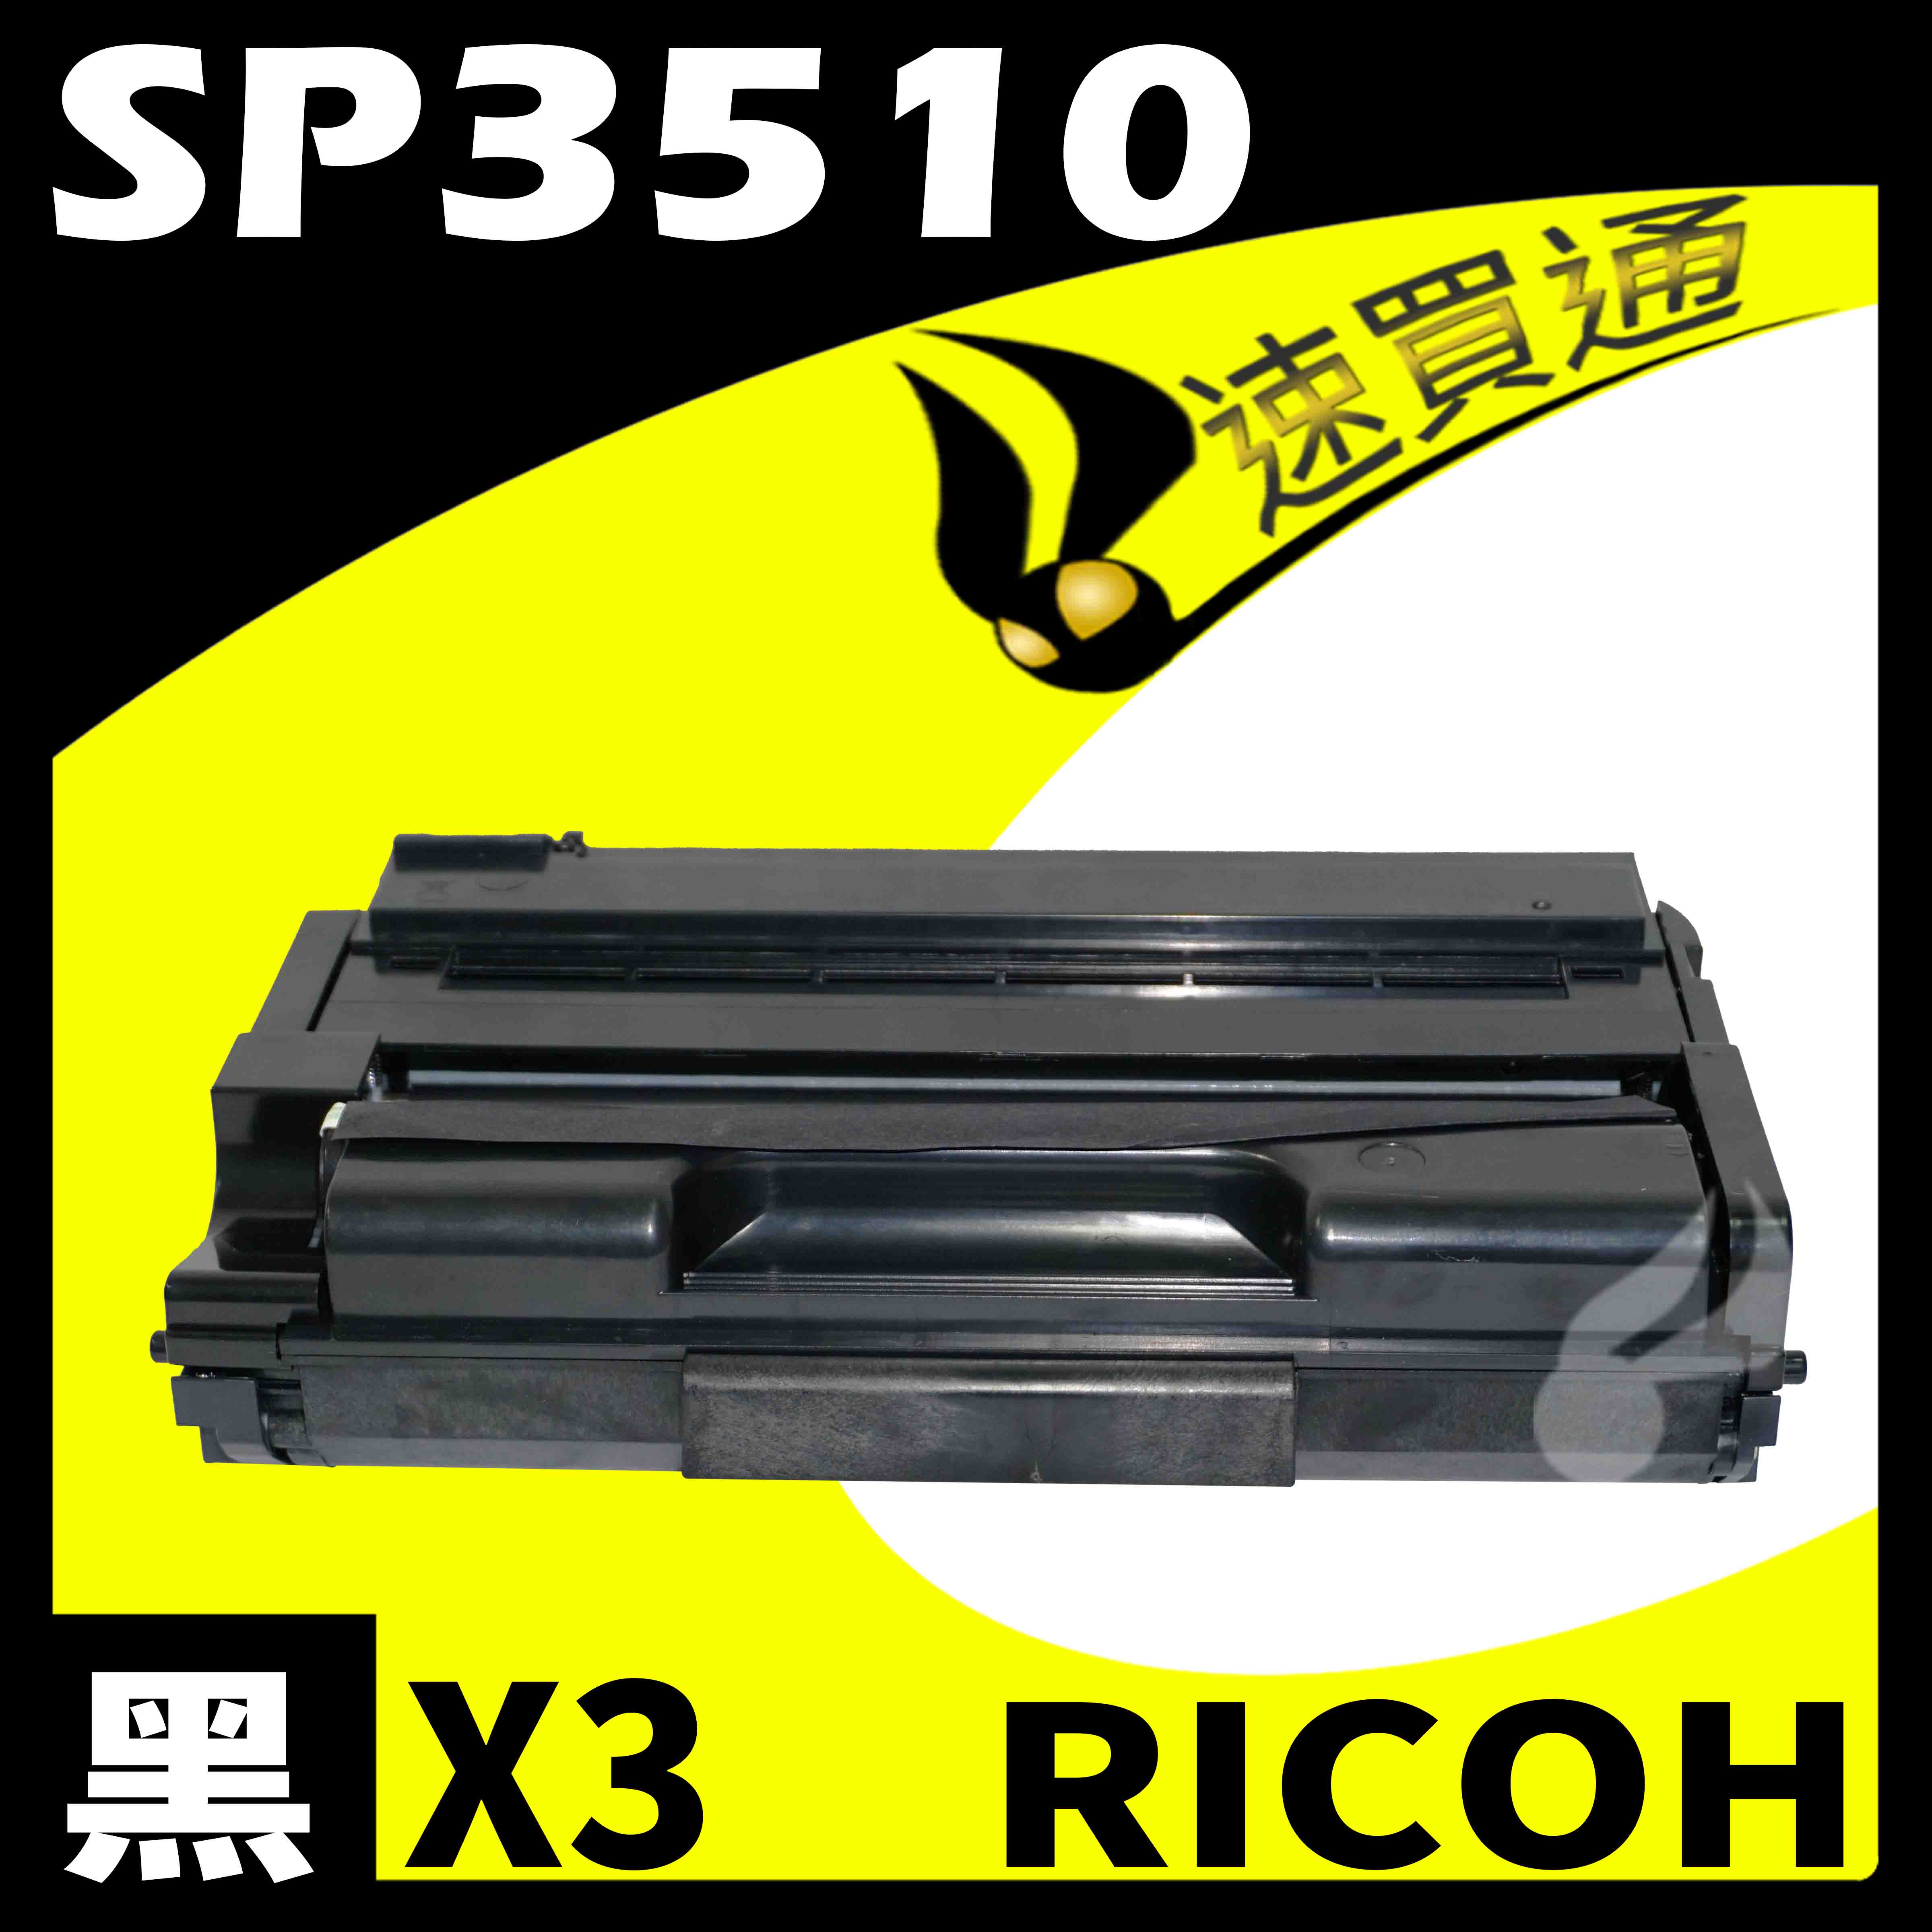 【速買通】超值3件組 RICOH SP-3510/SP3510 相容碳粉匣